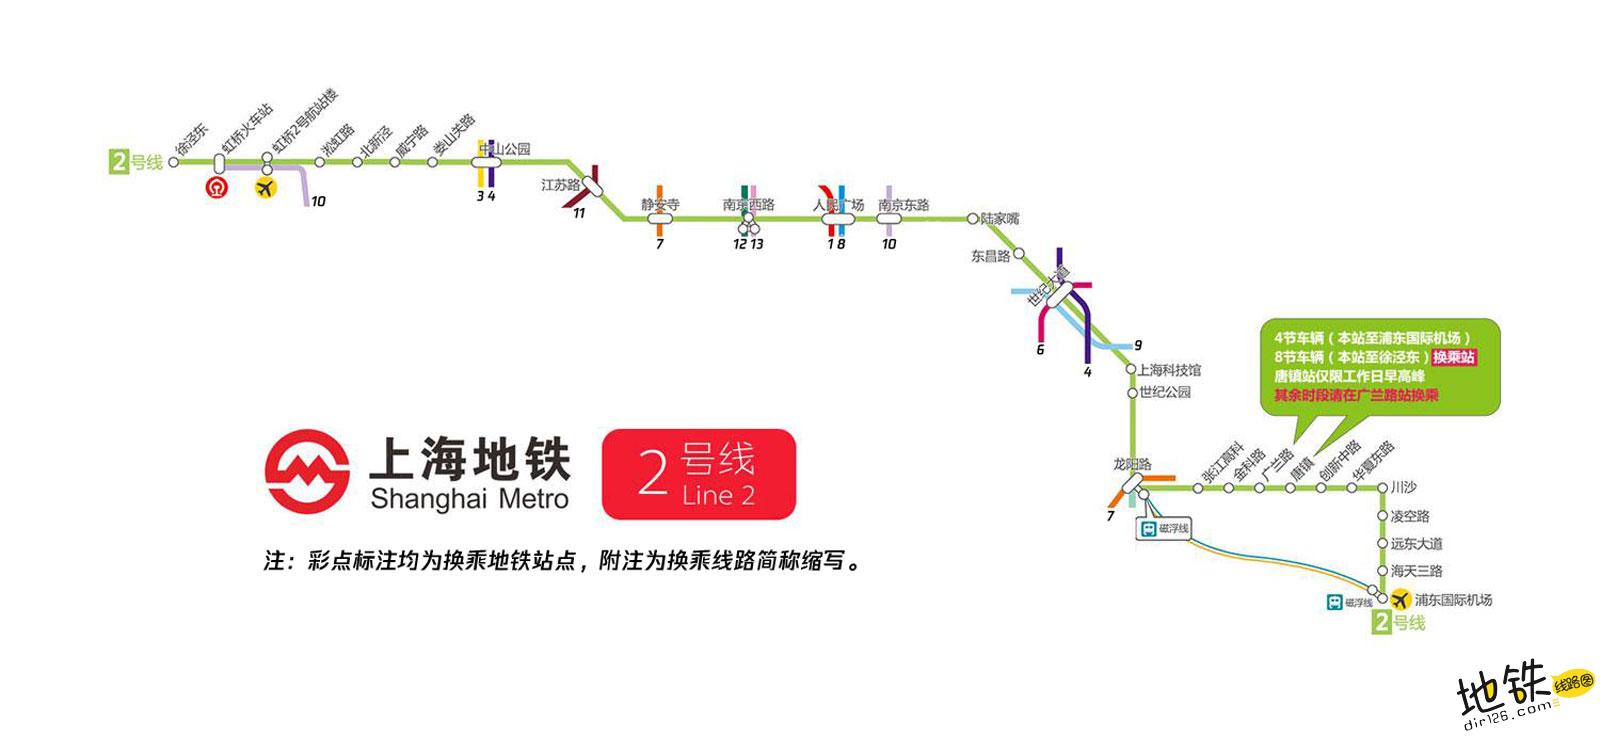 上海地铁2号线线路图_运营时间票价站点_查询下载